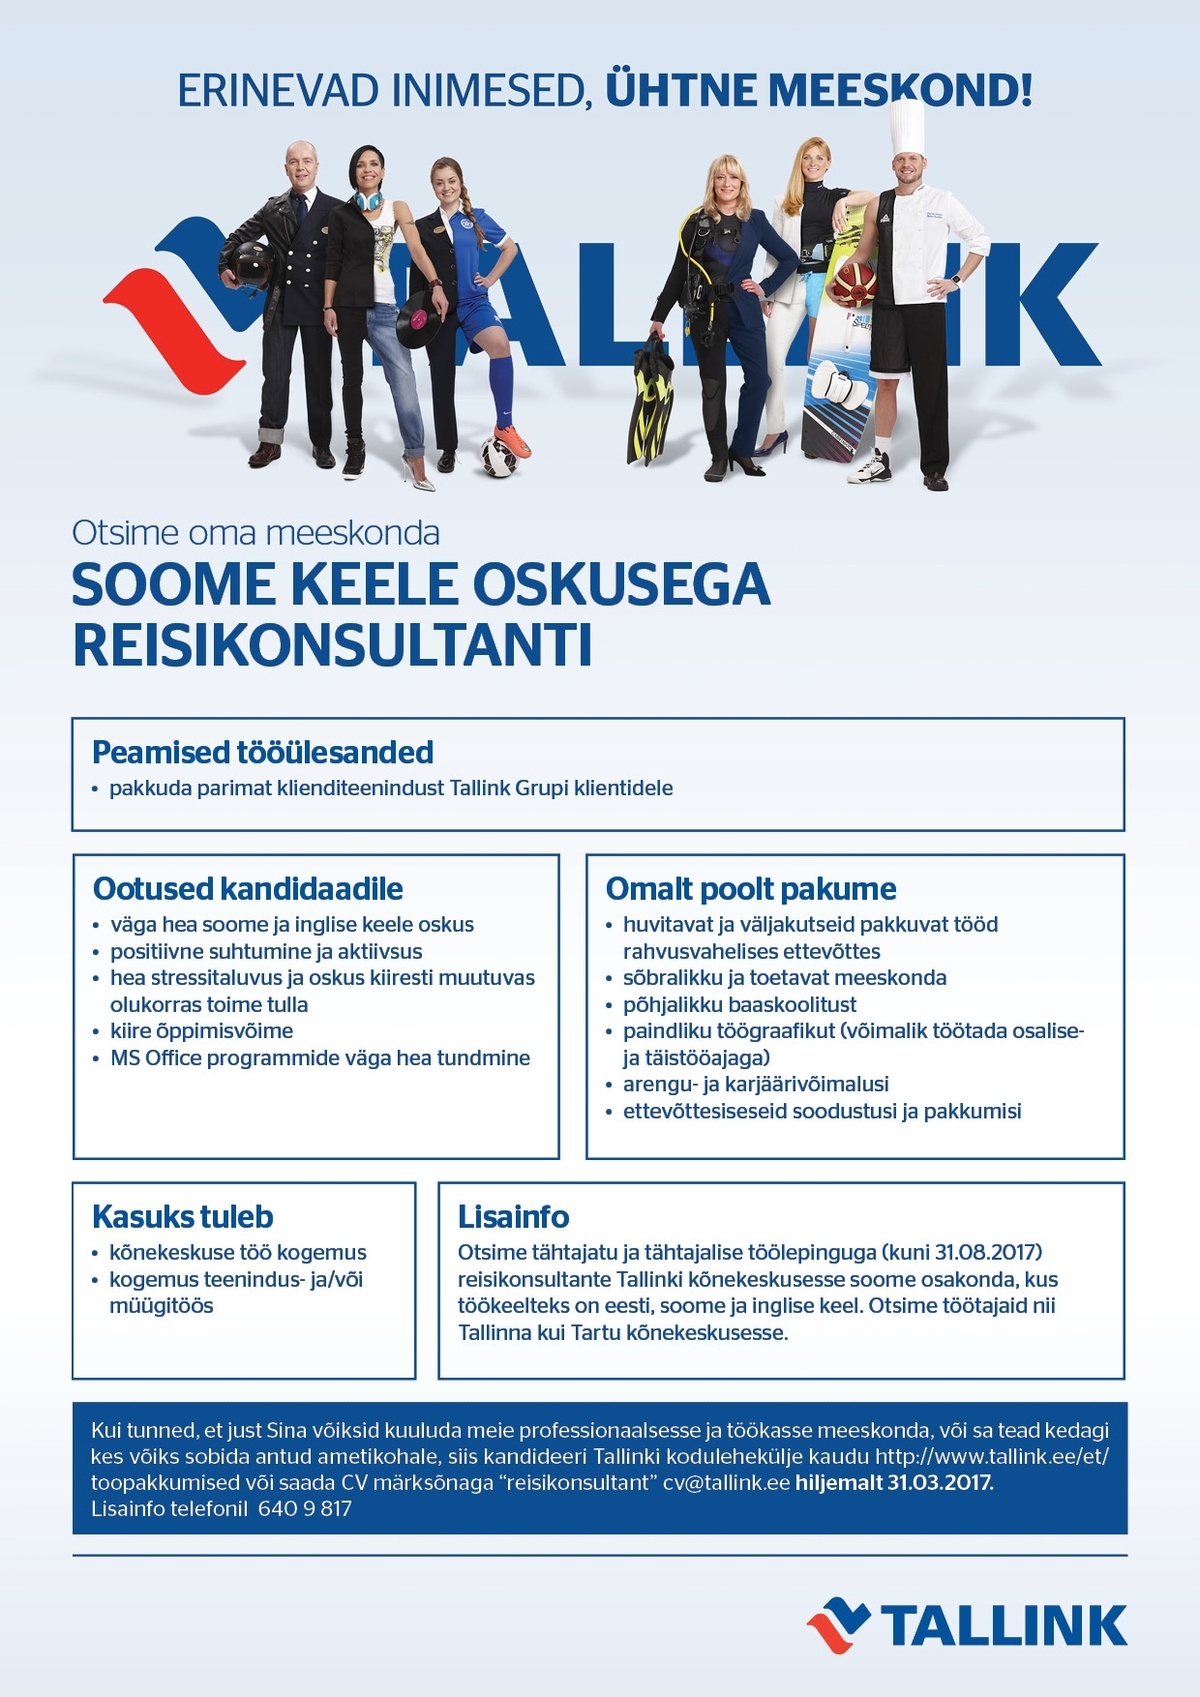 Tallink Grupp AS Soome keele oskusega reisikonsultant Tallinna ja Tartu kõnekeskusesse